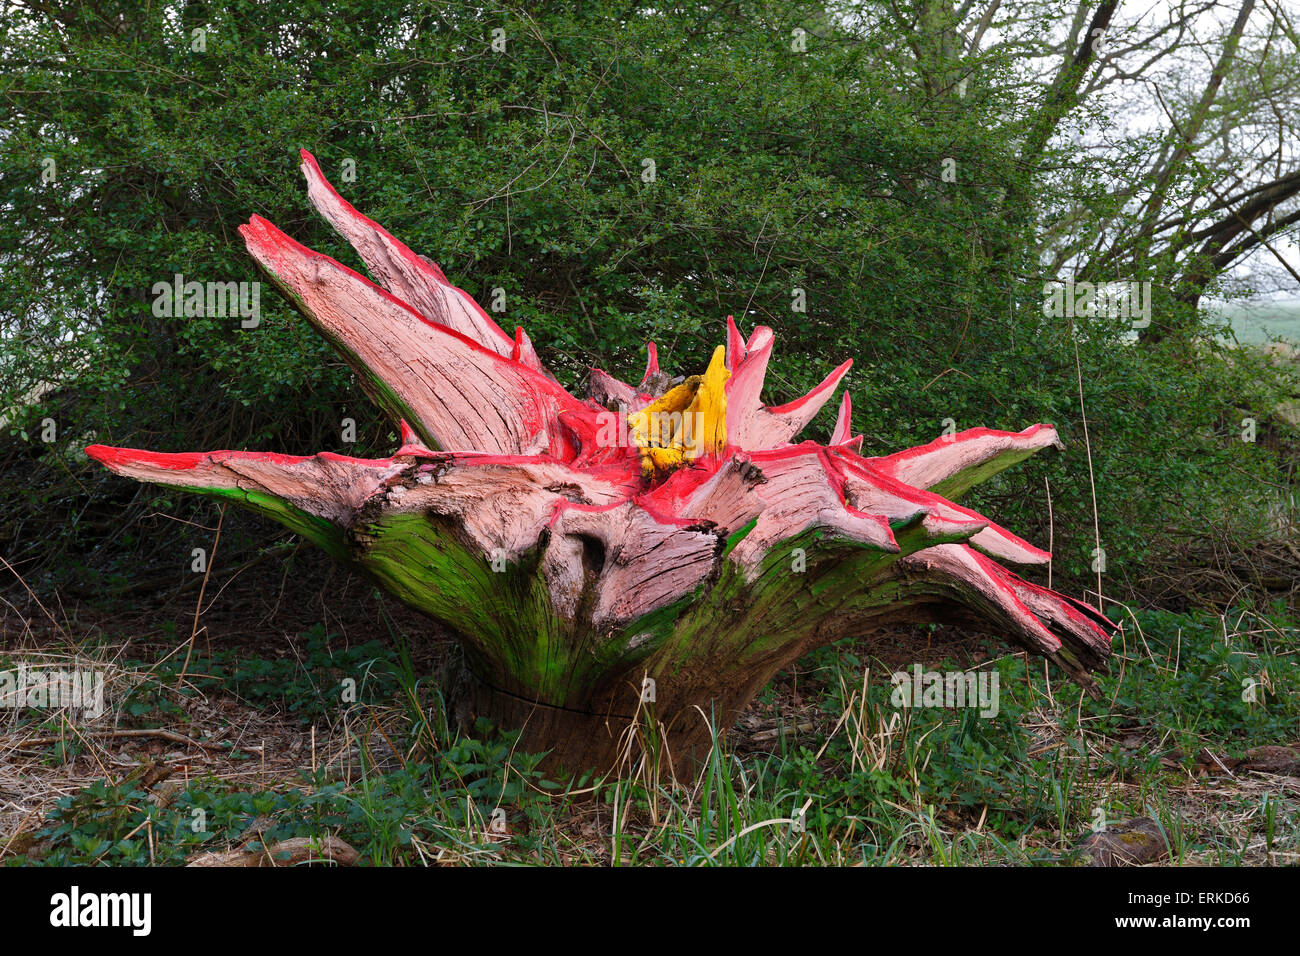 El arte de la madera, la simbiosis de las estructuras naturales y pintura, Reserva de la Biosfera del Elba medio, Sajonia-Anhalt, Alemania Foto de stock